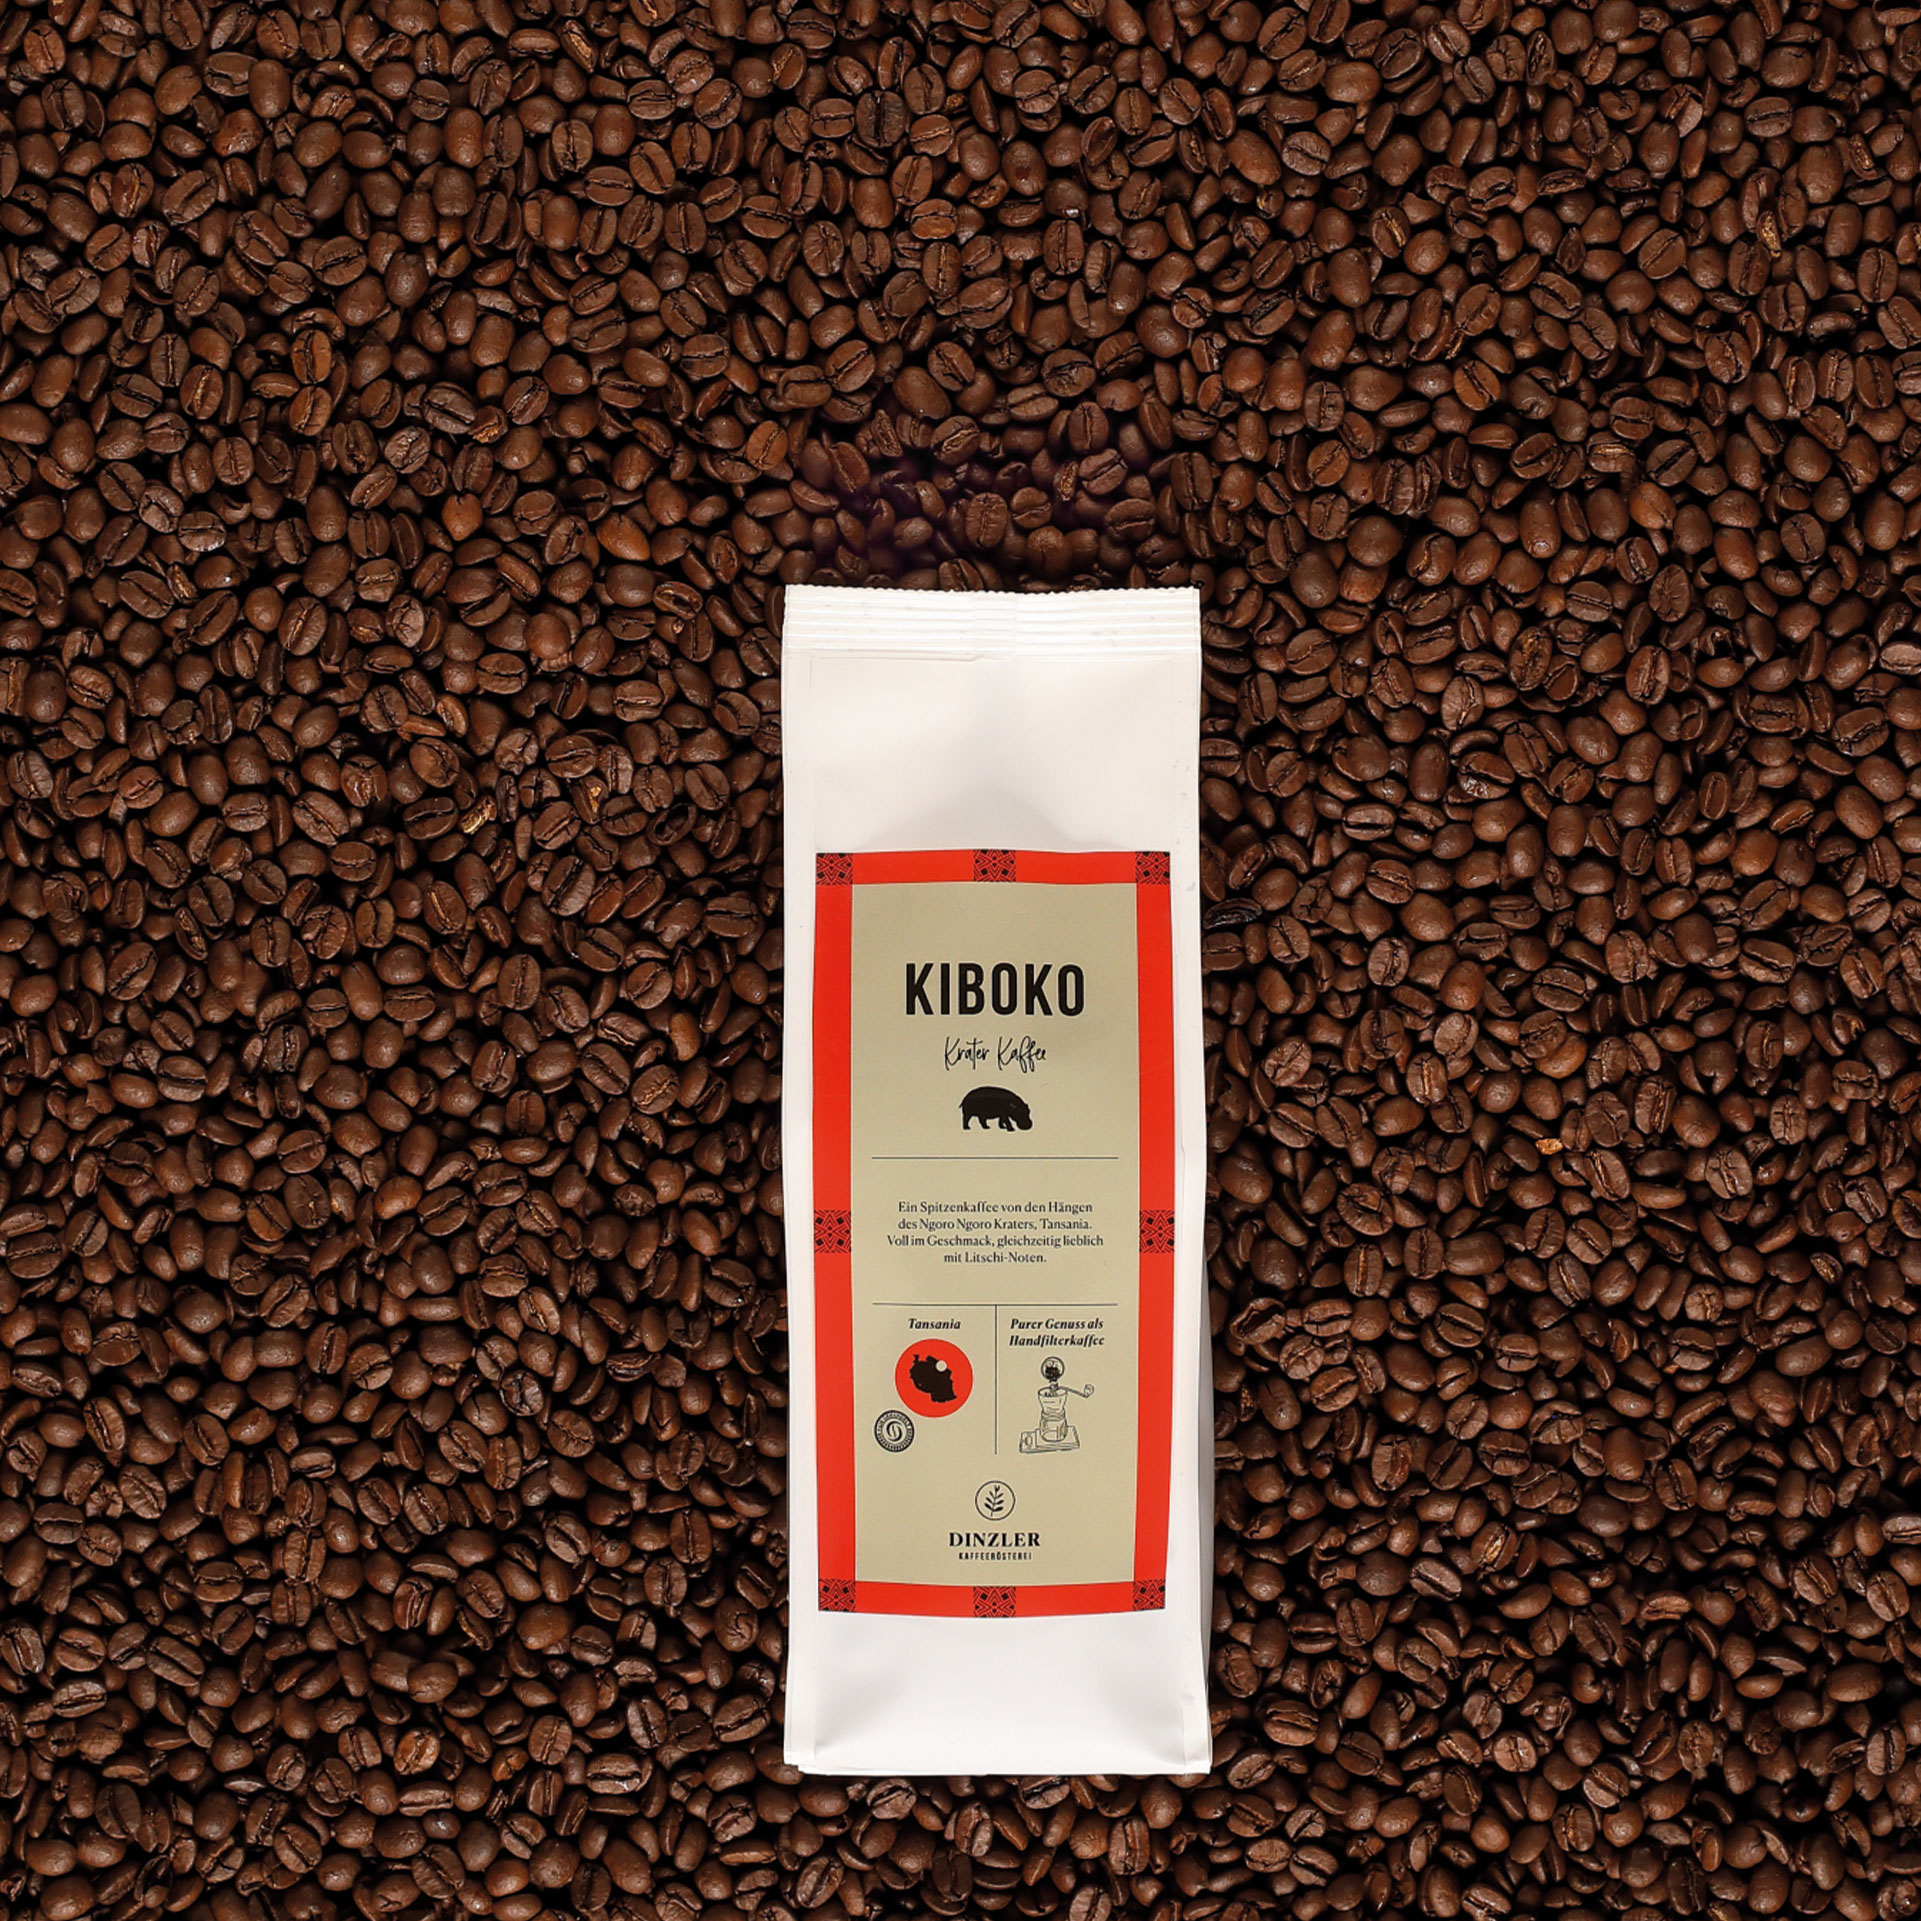 DINZLER Kaffee Kiboko| DINZLER Kaffeerösterei